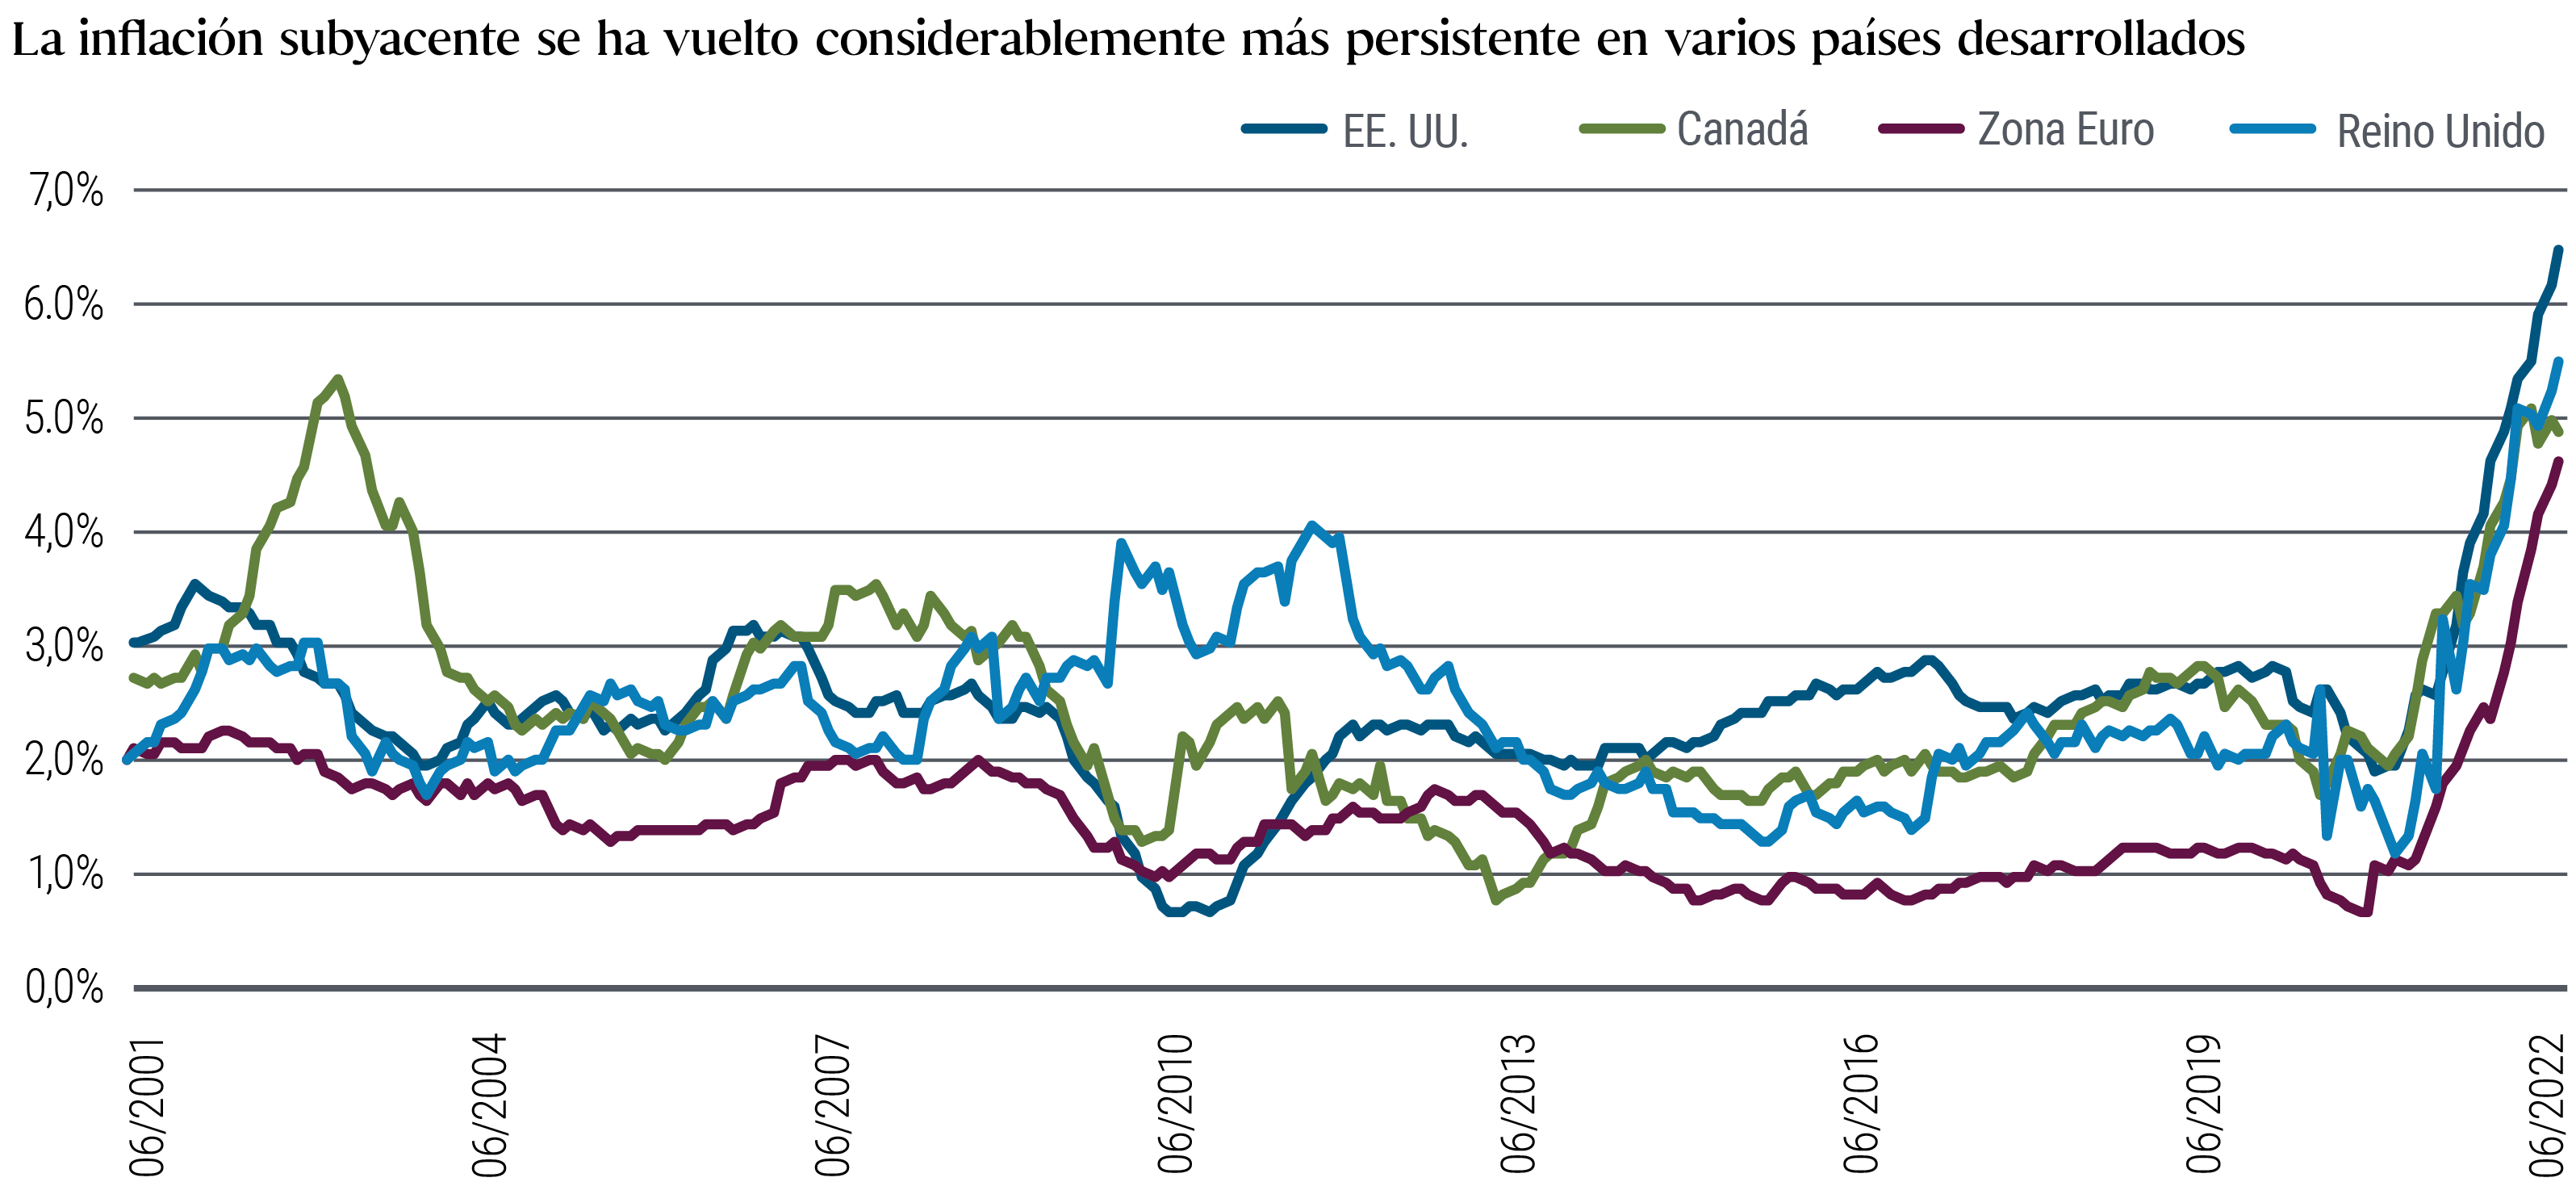 El gráfico de líneas muestra las persistentes tasas de inflación de los precios de los países centrales desde junio de 2001 hasta julio de 2022 en Estados Unidos, Canadá, el Reino Unido y la zona euro. El concepto de inflación «pegajosa» se define debajo del gráfico. Las regiones muestran un significativo repunte del IPC «pegajoso», primero en el Reino Unido a finales de 2020 y después en el resto de países a principios de 2021. A 31 de julio de 2022, el IPC «pegajoso» en Estados Unidos ascendía al 6,5%, lo que supone un aumento desde un nivel inferior al 2% a principios de 2021. En la zona euro, la cifra aumentó al 4,7% a finales de julio, un incremento desde el 0,7% aproximadamente a finales de 2020. El gráfico también muestra cómo la inflación «pegajosa» en todas las regiones se ha desviado recientemente del rango normal exhibido durante cerca de dos décadas.